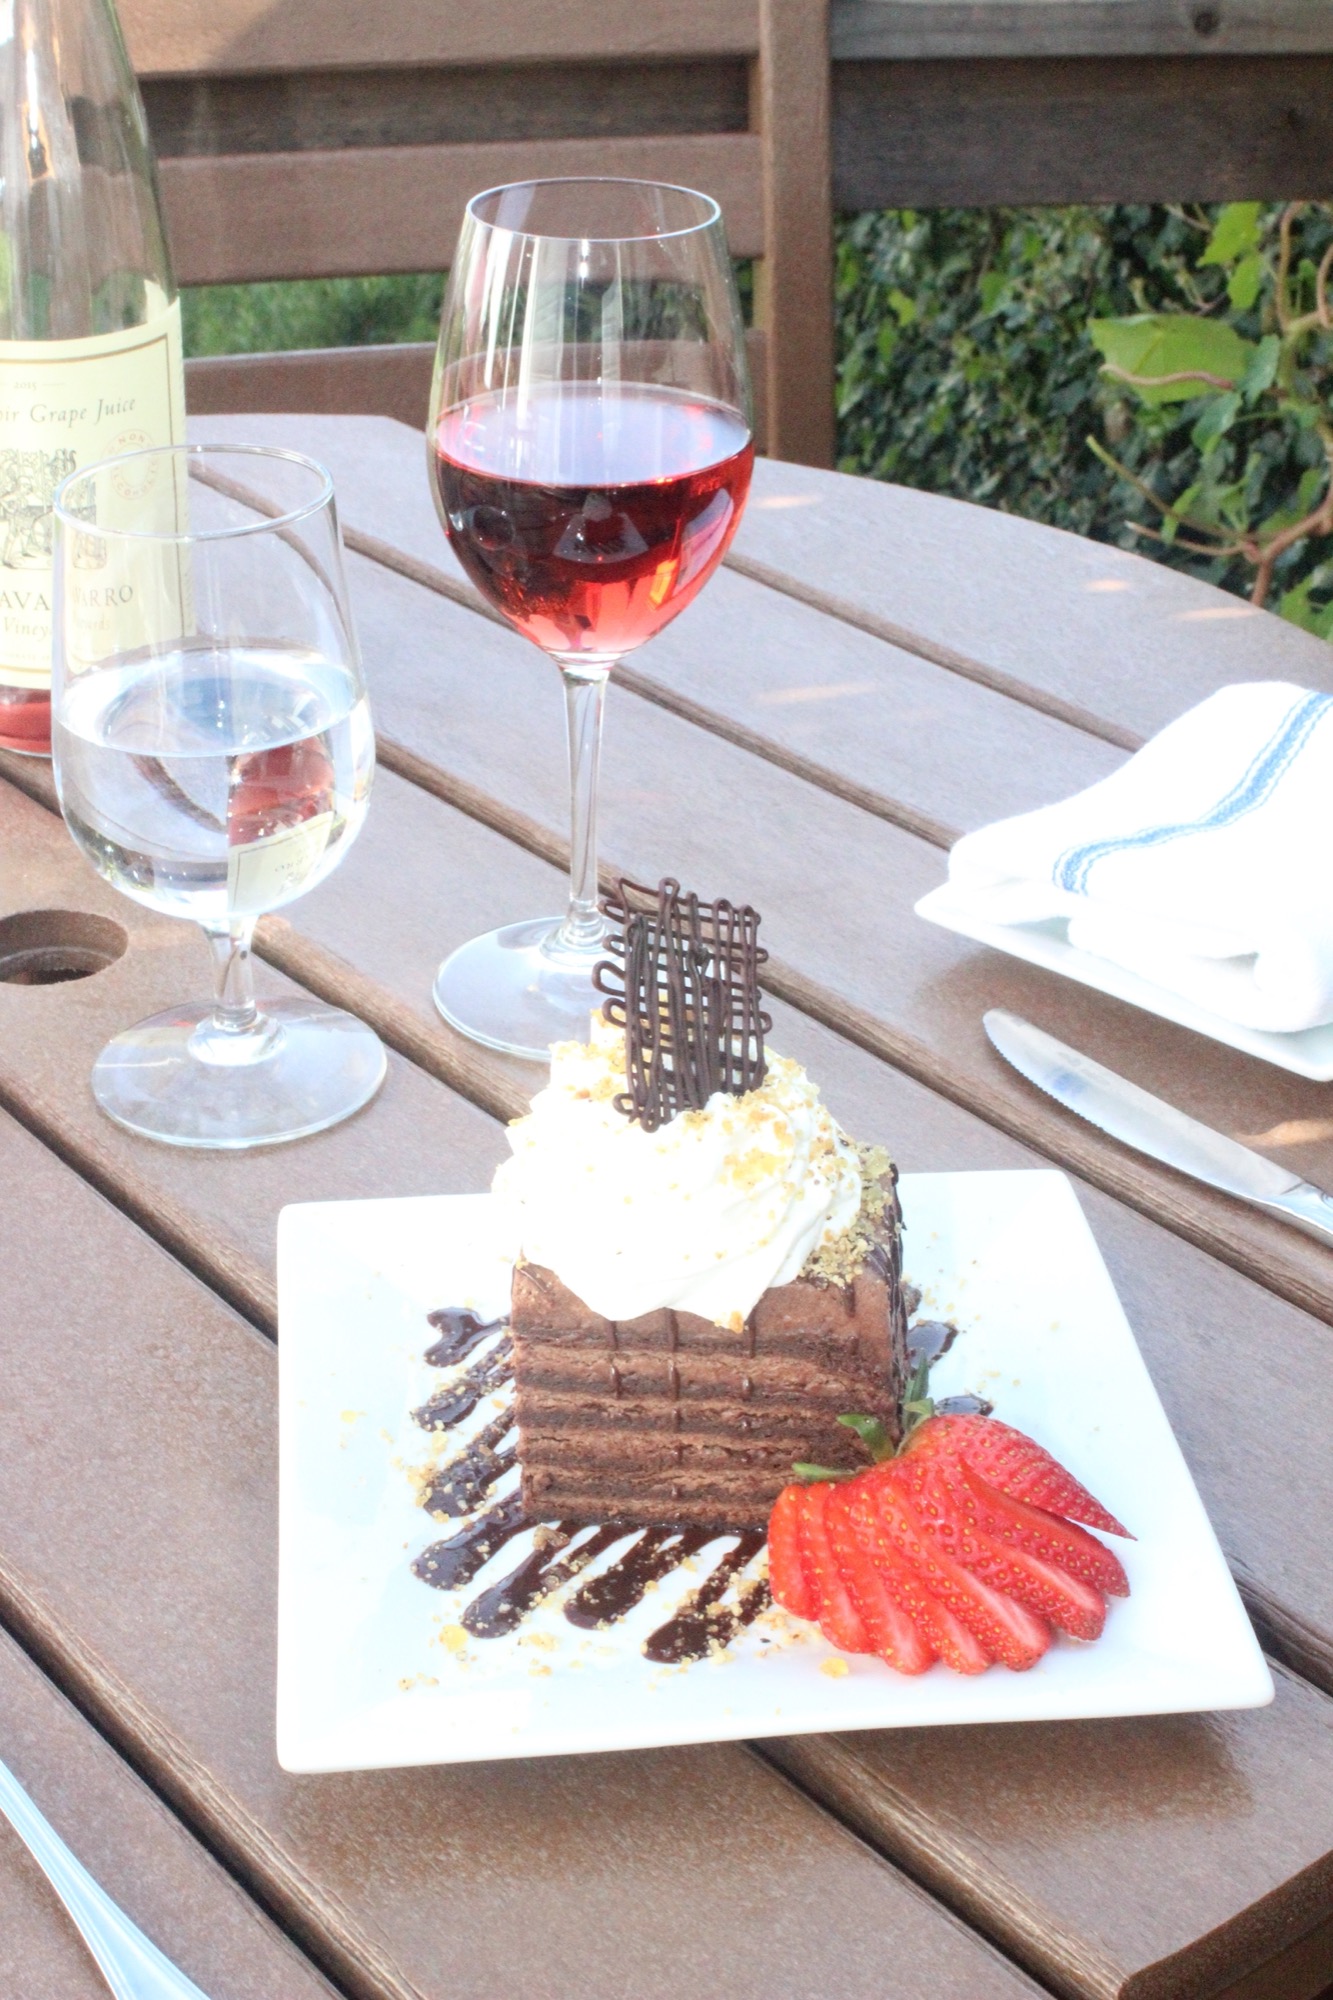 Dessert and Wine at Trillium Cafe, Mendocino